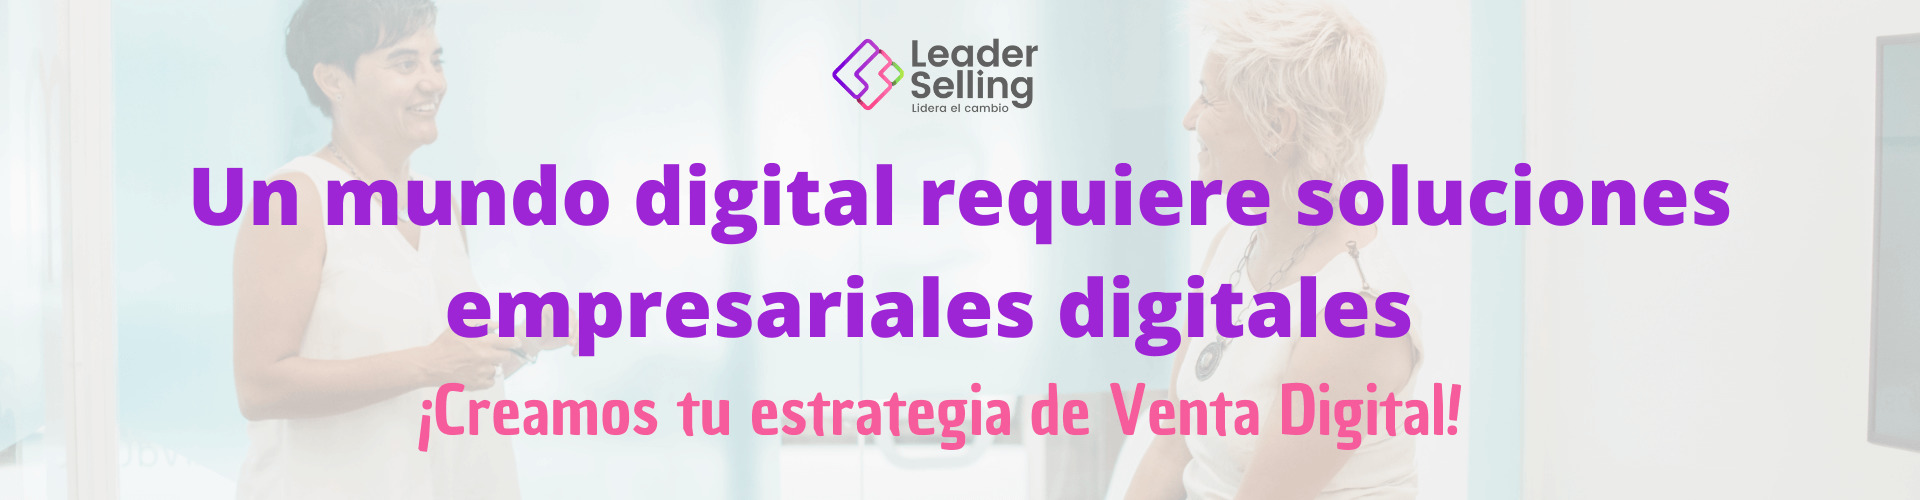 leader selling venta digital